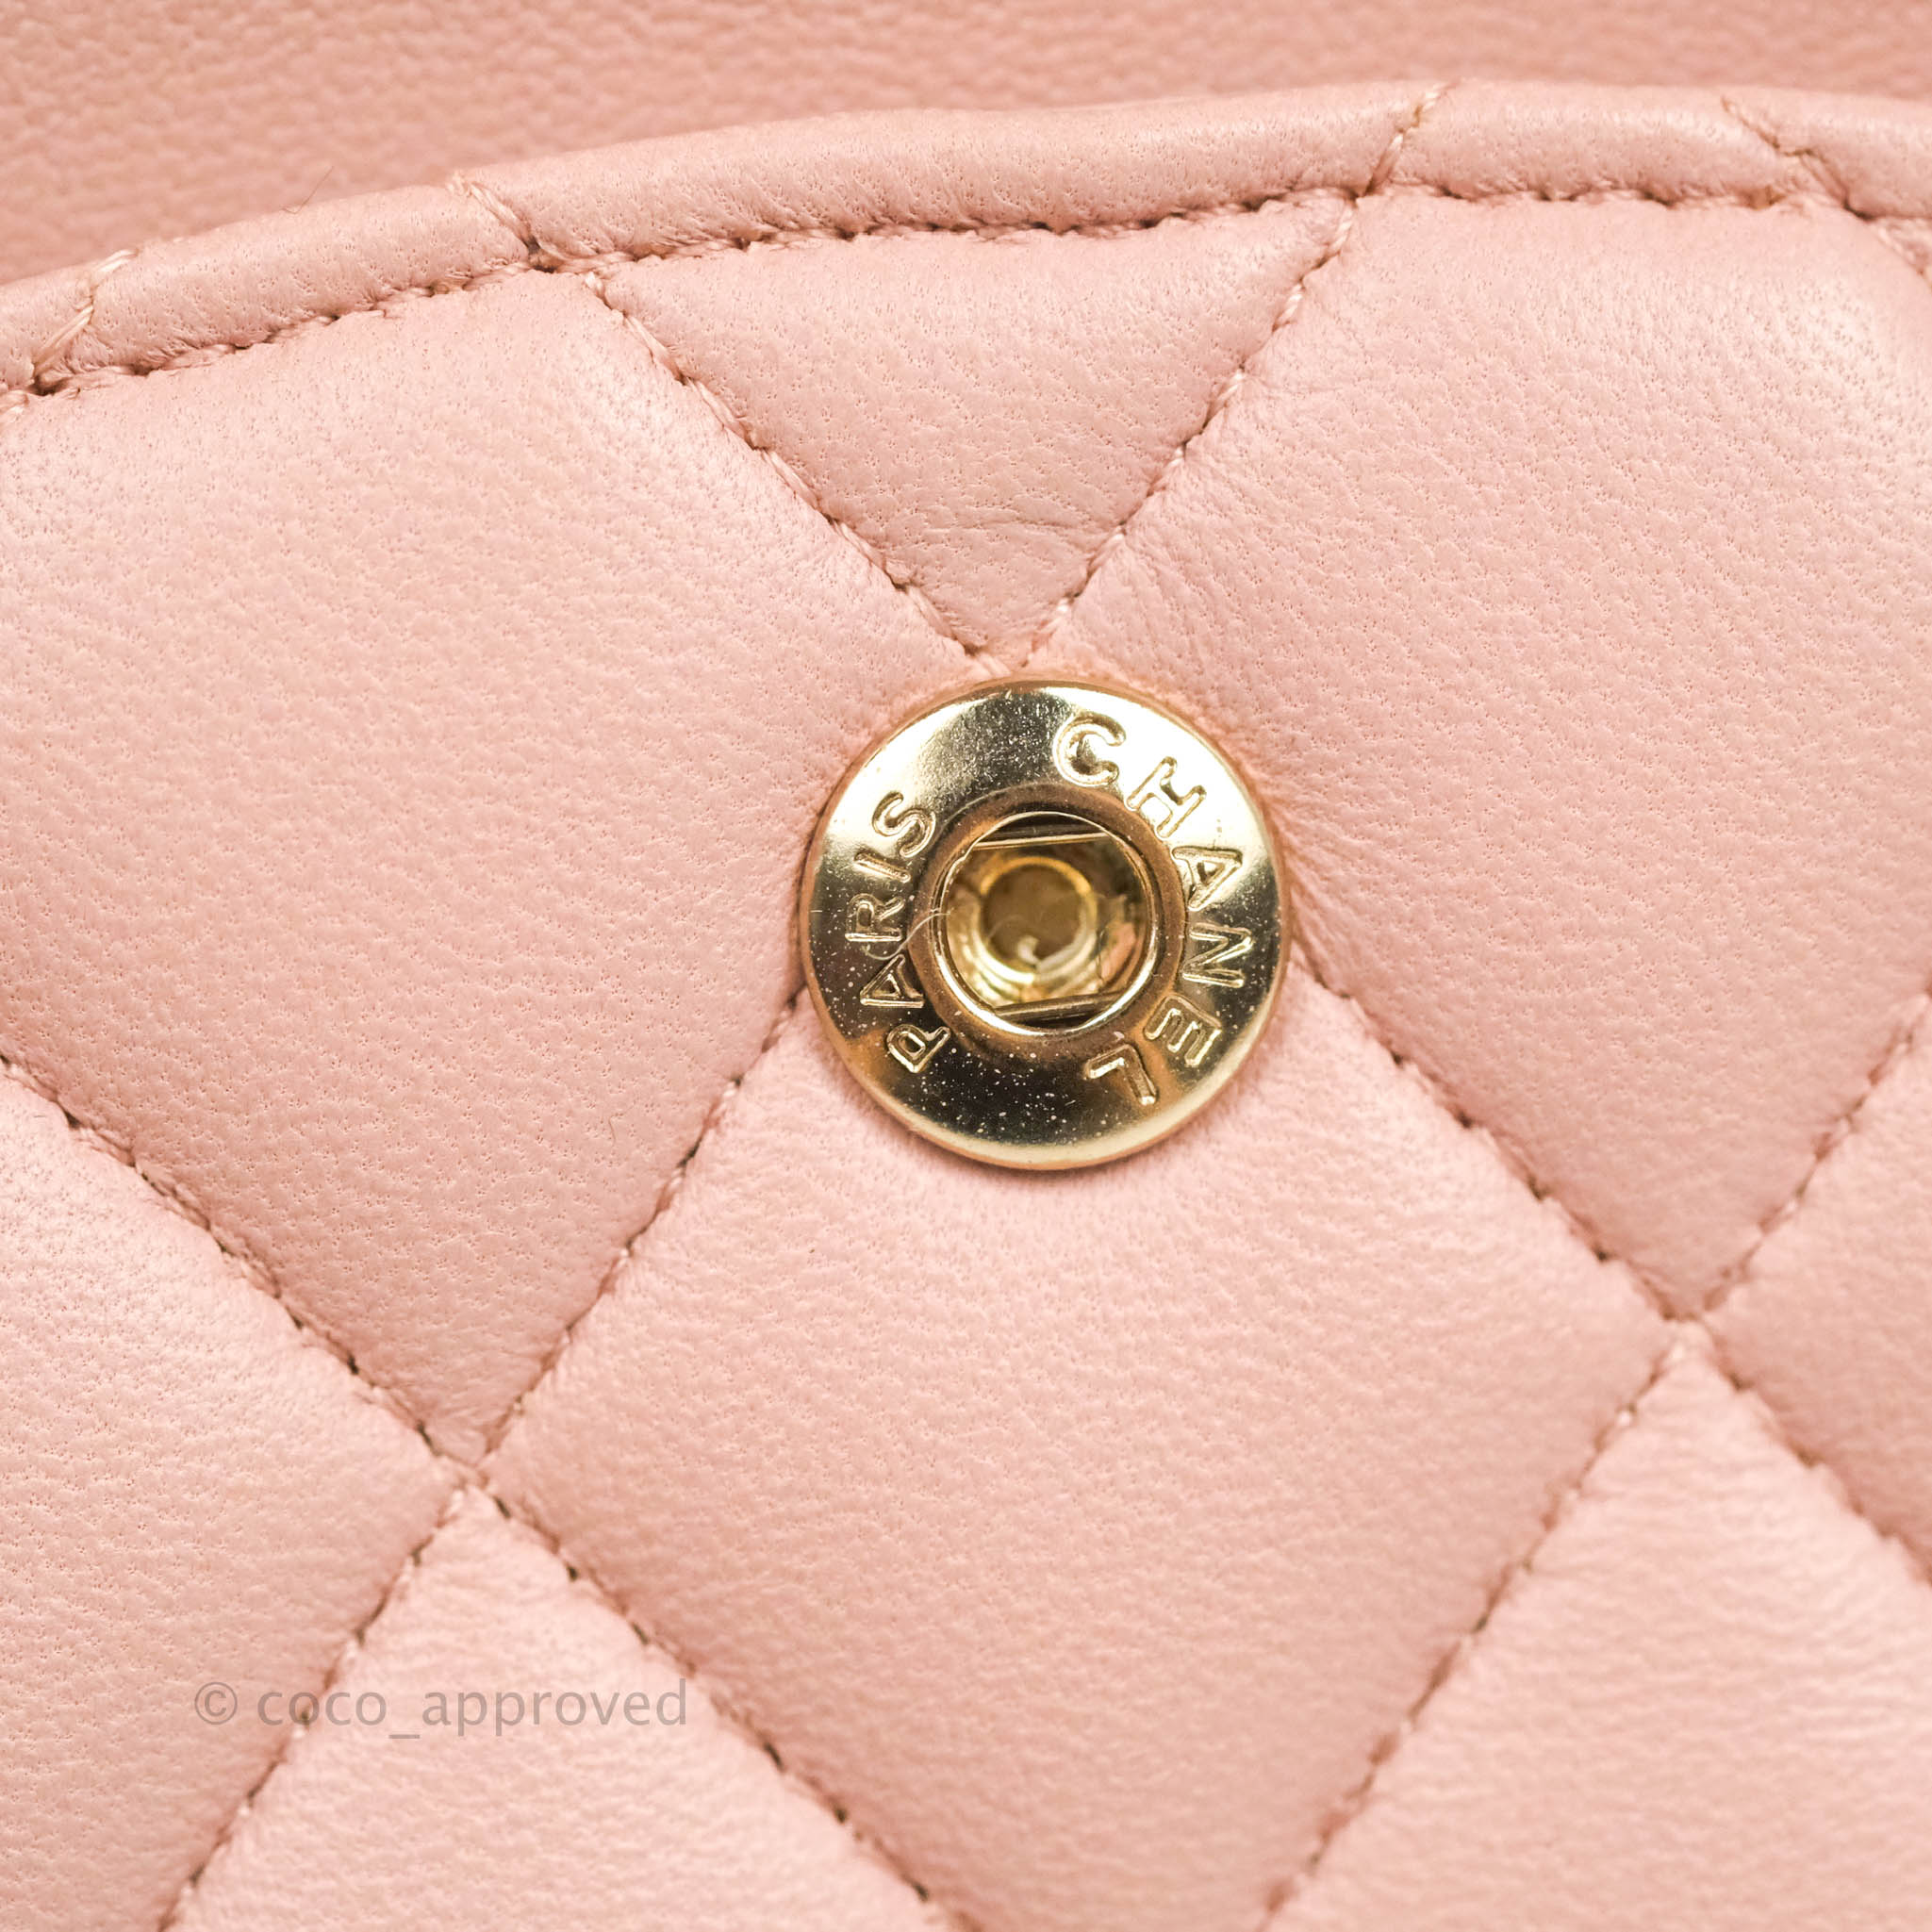 Chanel Enamel & Gold Handle Flap Bag Light Pink PREORDER – Vault 55